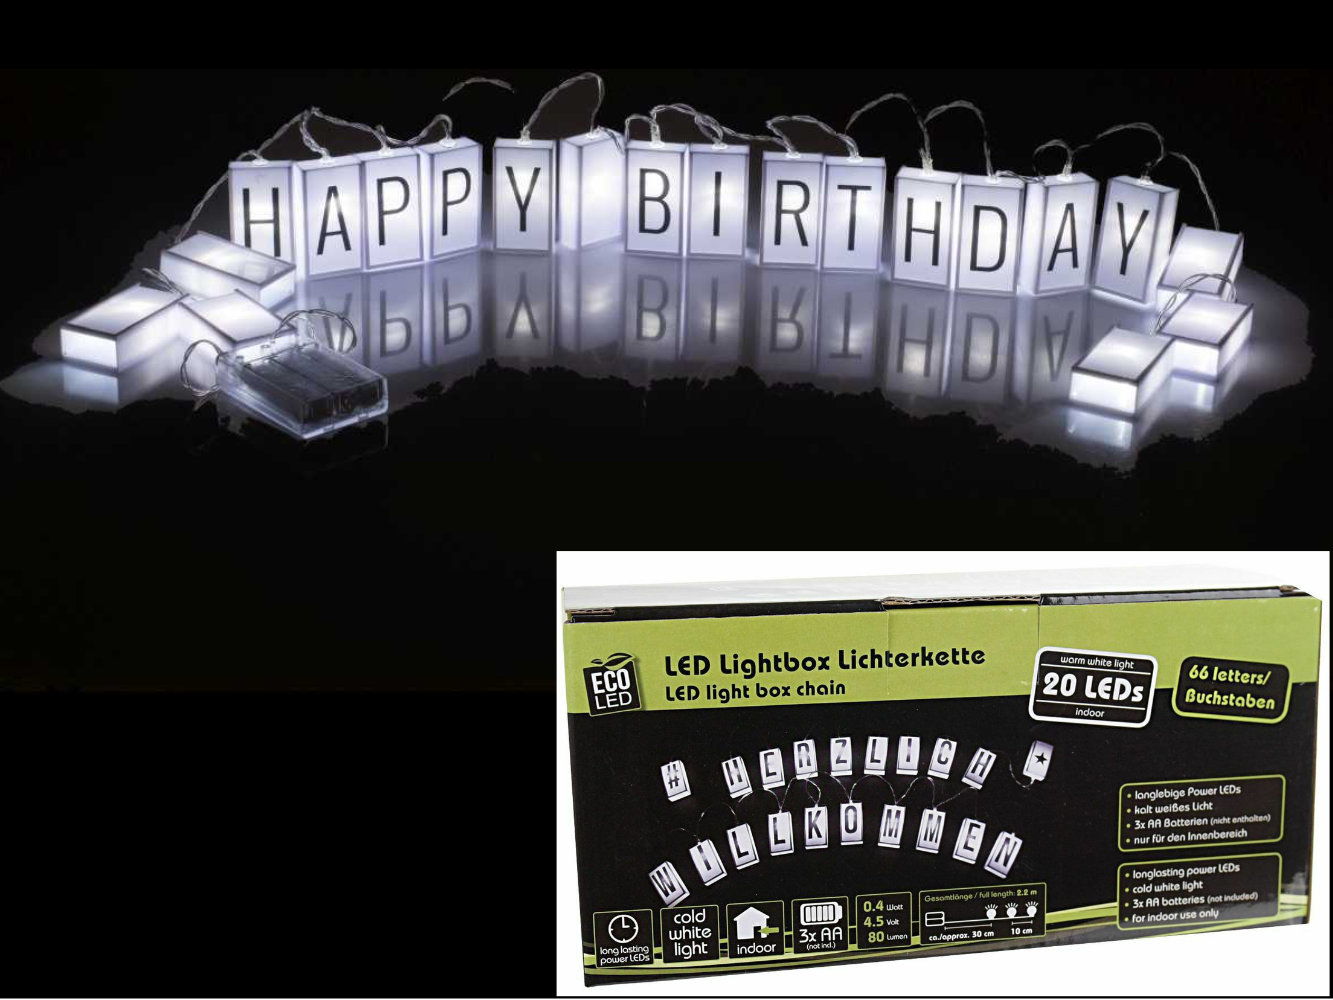 LED Lichterkette Lightbox mit 66 Buchstaben & 20 LED